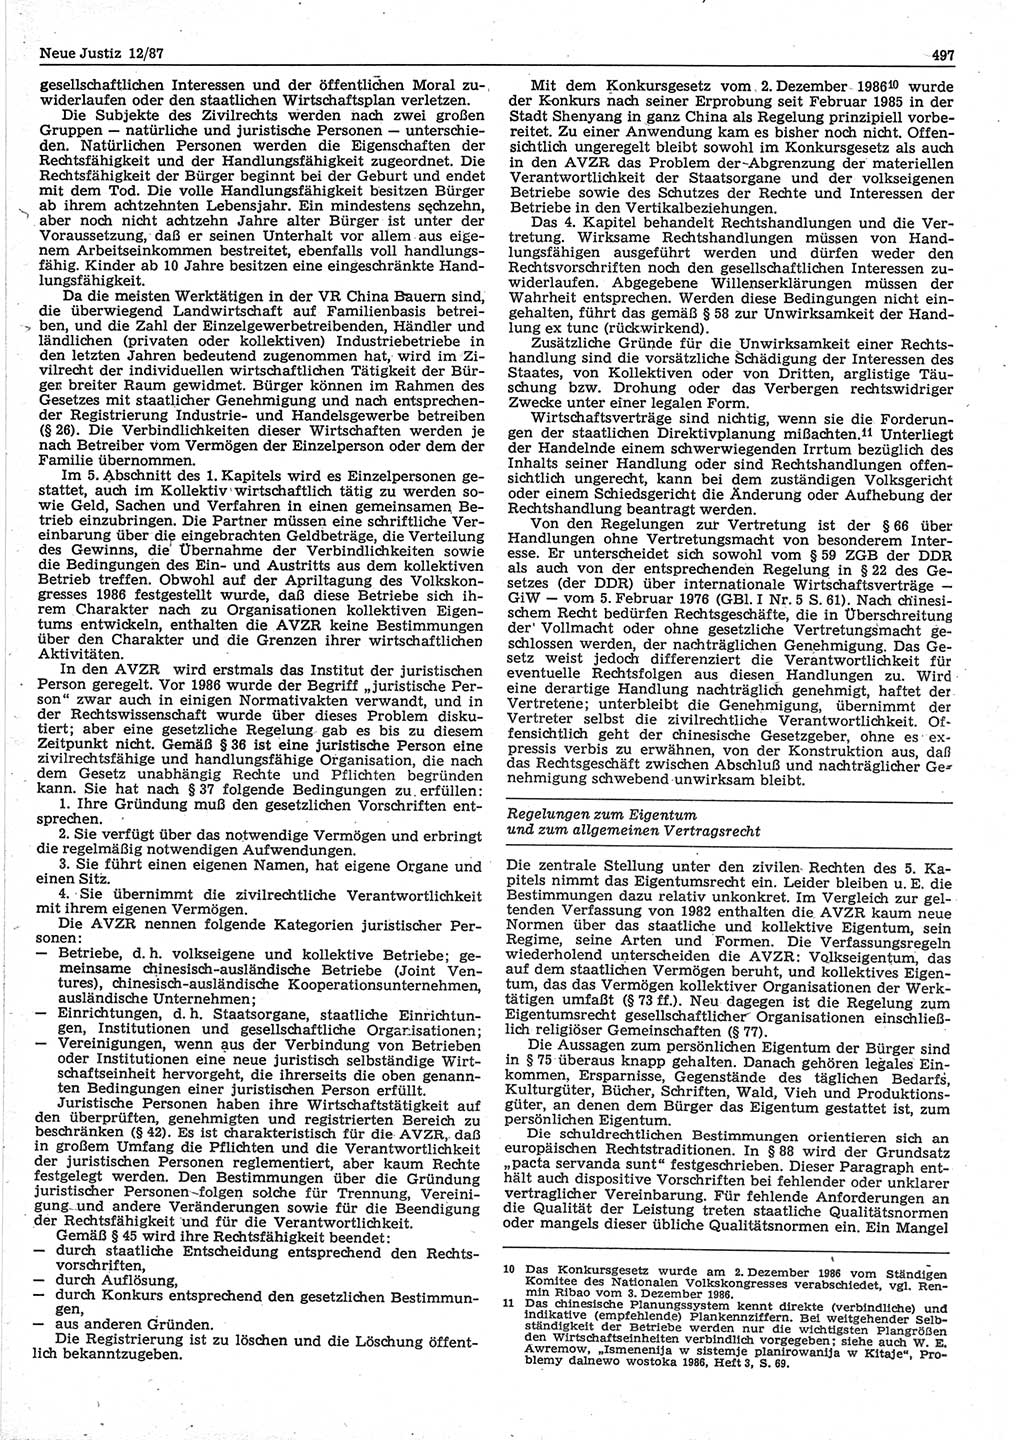 Neue Justiz (NJ), Zeitschrift für sozialistisches Recht und Gesetzlichkeit [Deutsche Demokratische Republik (DDR)], 41. Jahrgang 1987, Seite 497 (NJ DDR 1987, S. 497)